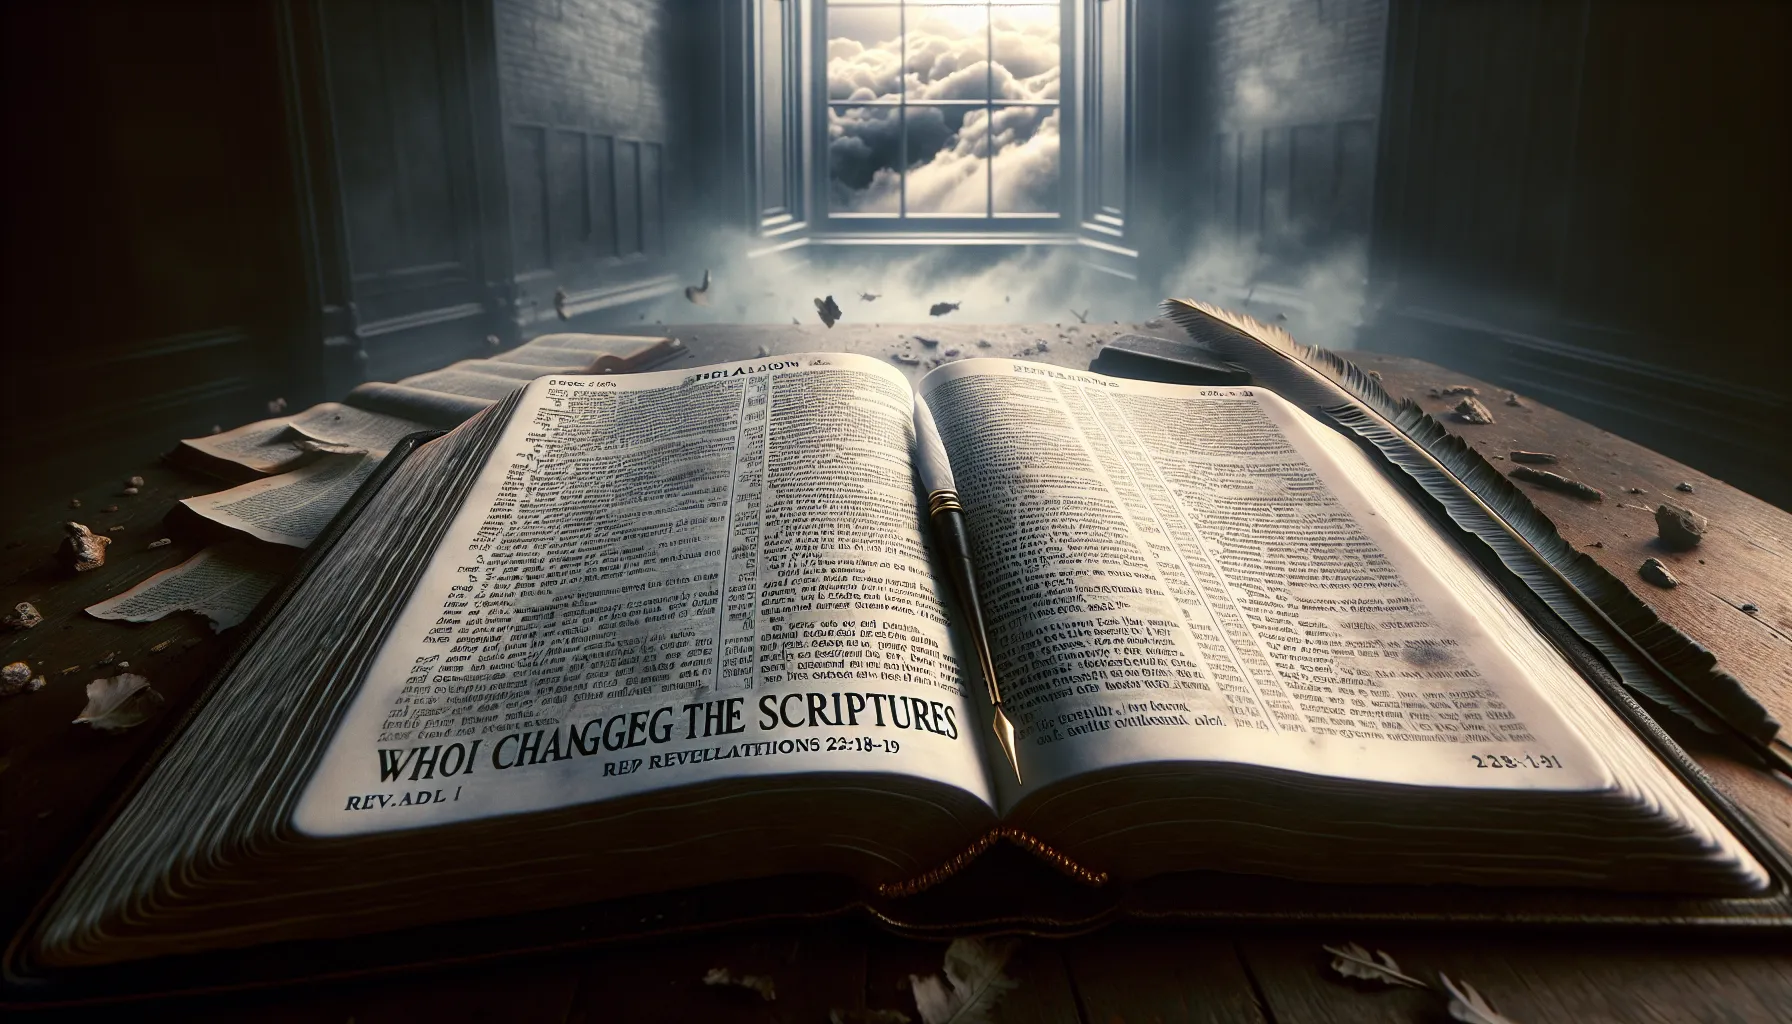 Advertencia sobre las consecuencias de modificar la Biblia según Apocalipsis 22:18-19.